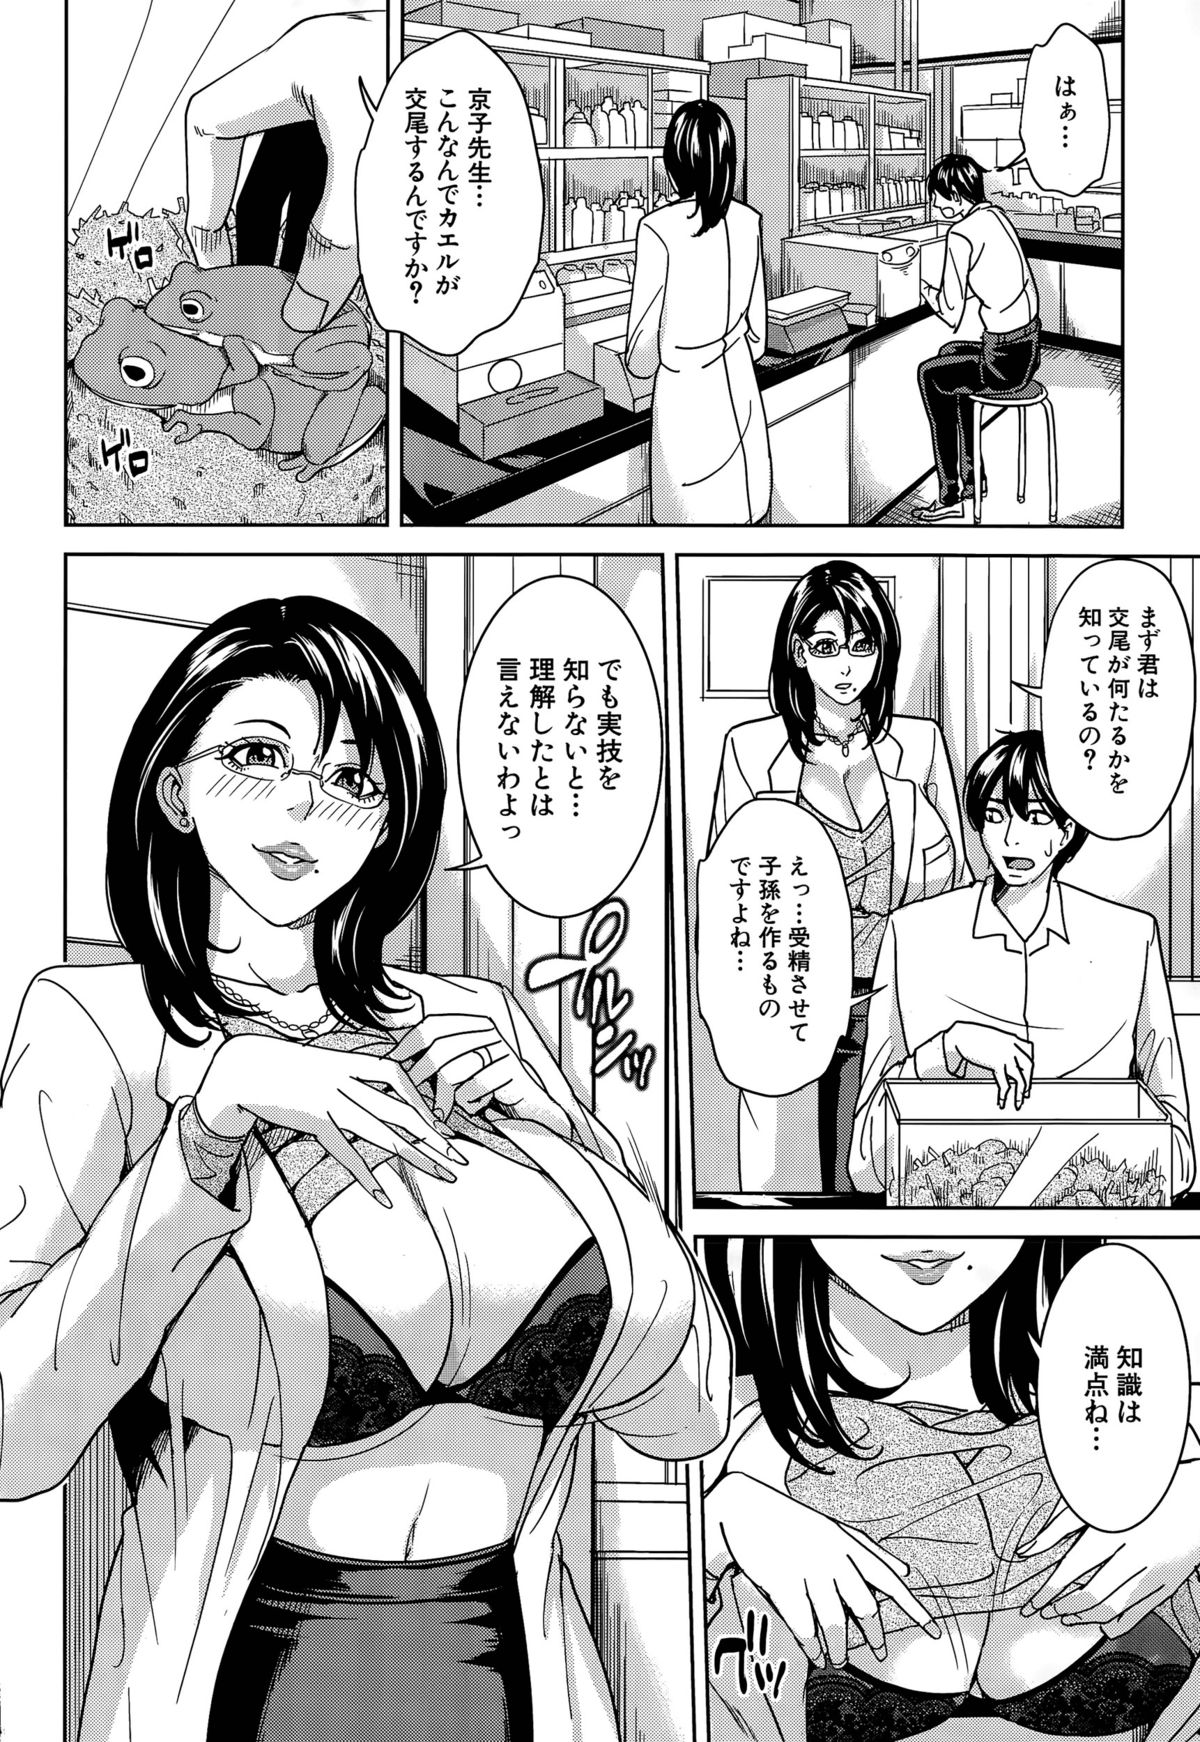 [Maimu-Maimu] Kyouko Sensei to Boku no Himitsu Ch. 1-2 page 8 full